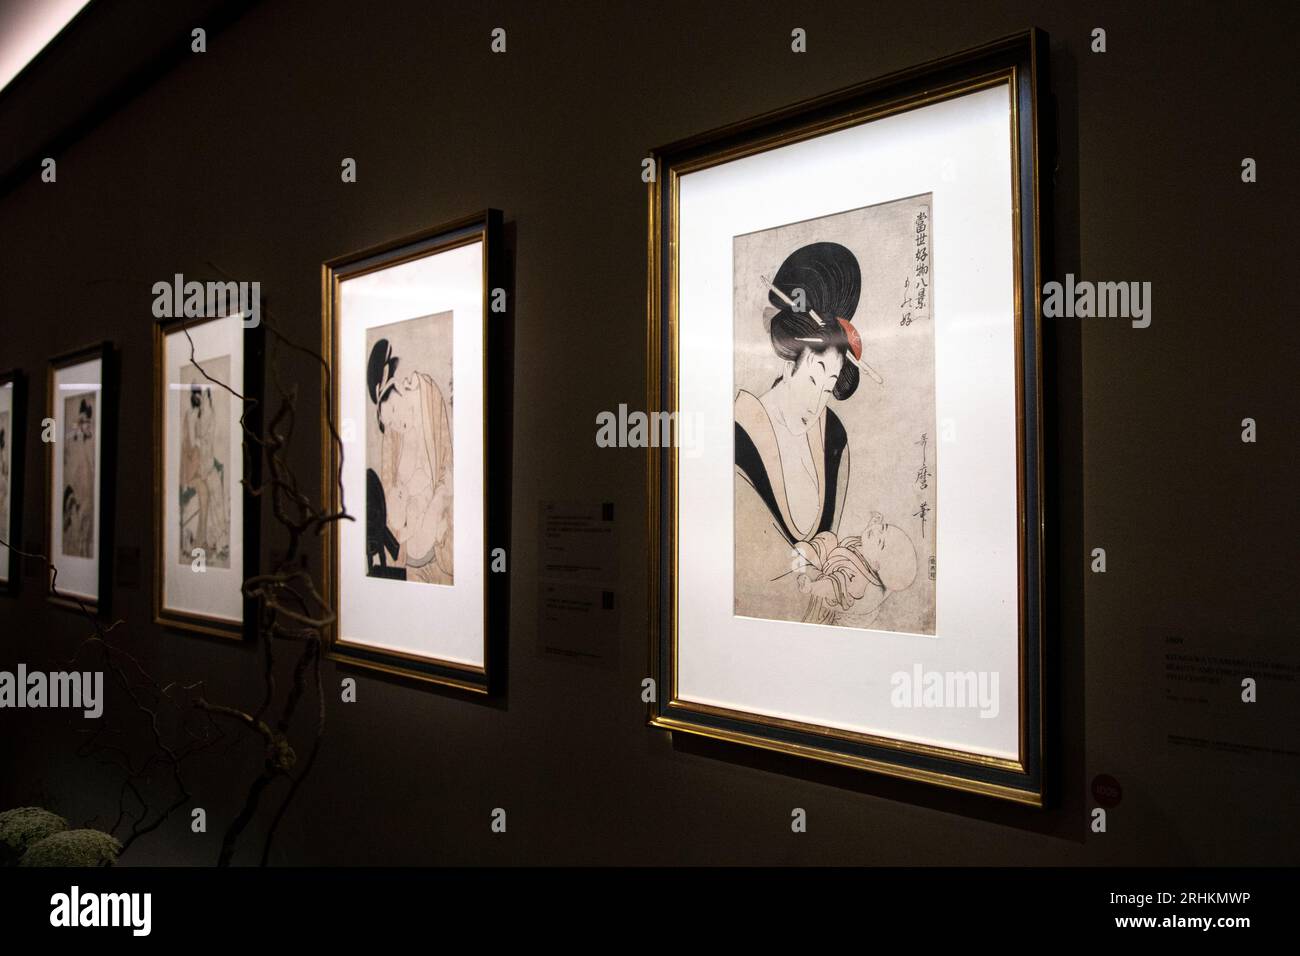 Les gravures sur bois Kitagawa Utamaro de Freddie Mercury à l'exposition Sotheby's A World of HIS Own, Londres, Royaume-Uni Banque D'Images